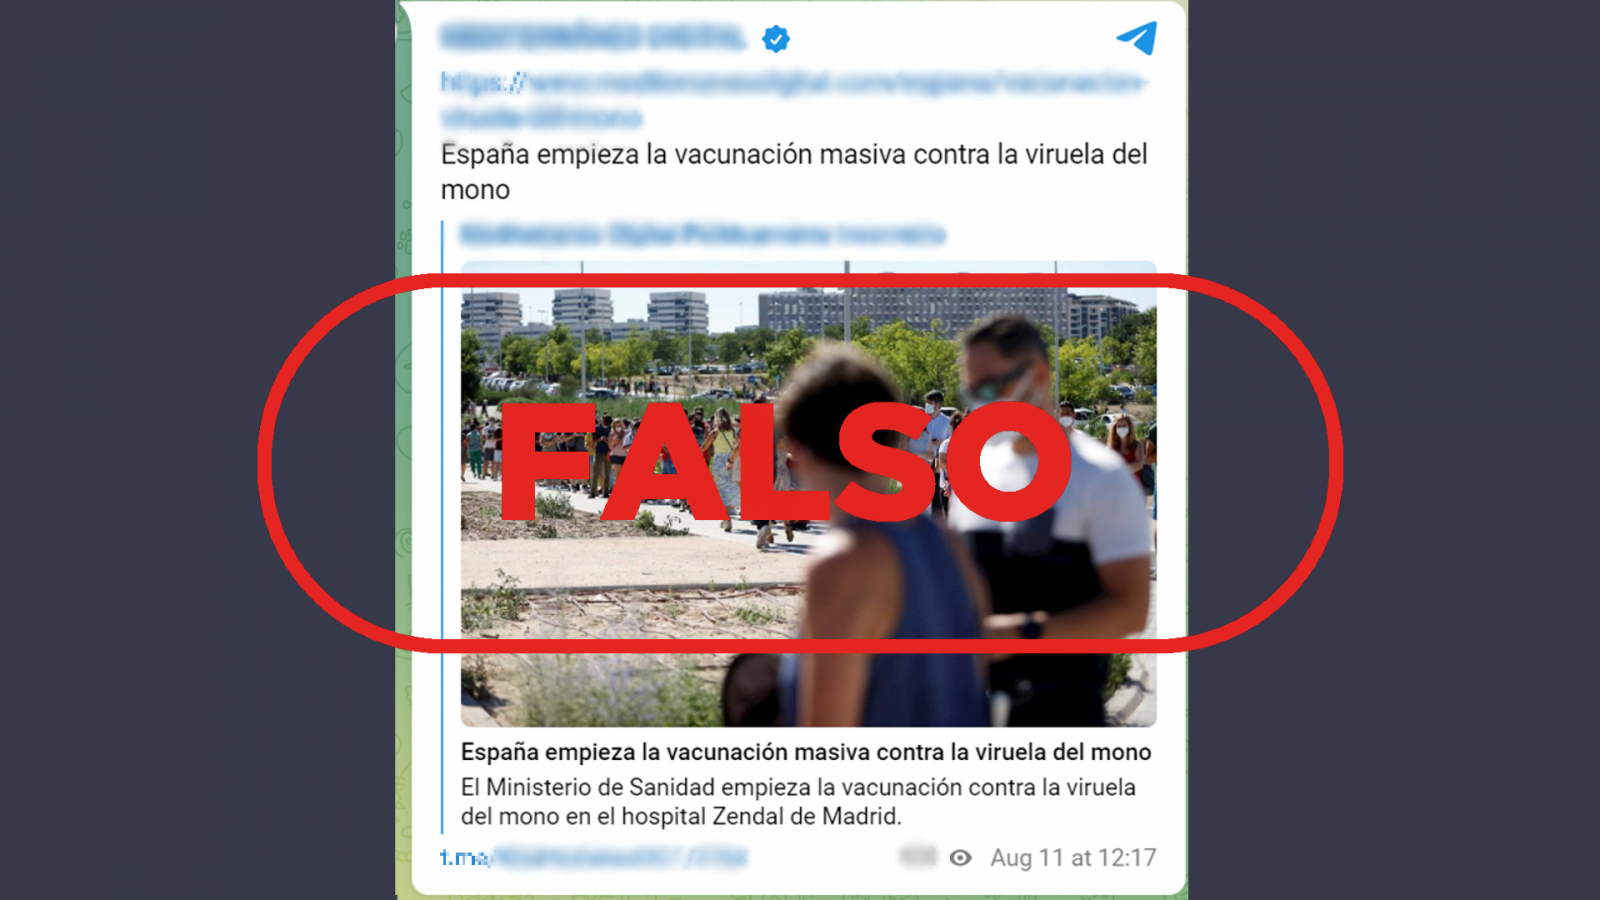 Mensaje falso de Telegram que afirma que en España se vacuna de forma masiva contra la viruela del mono, con el sello 'Falso' en rojo